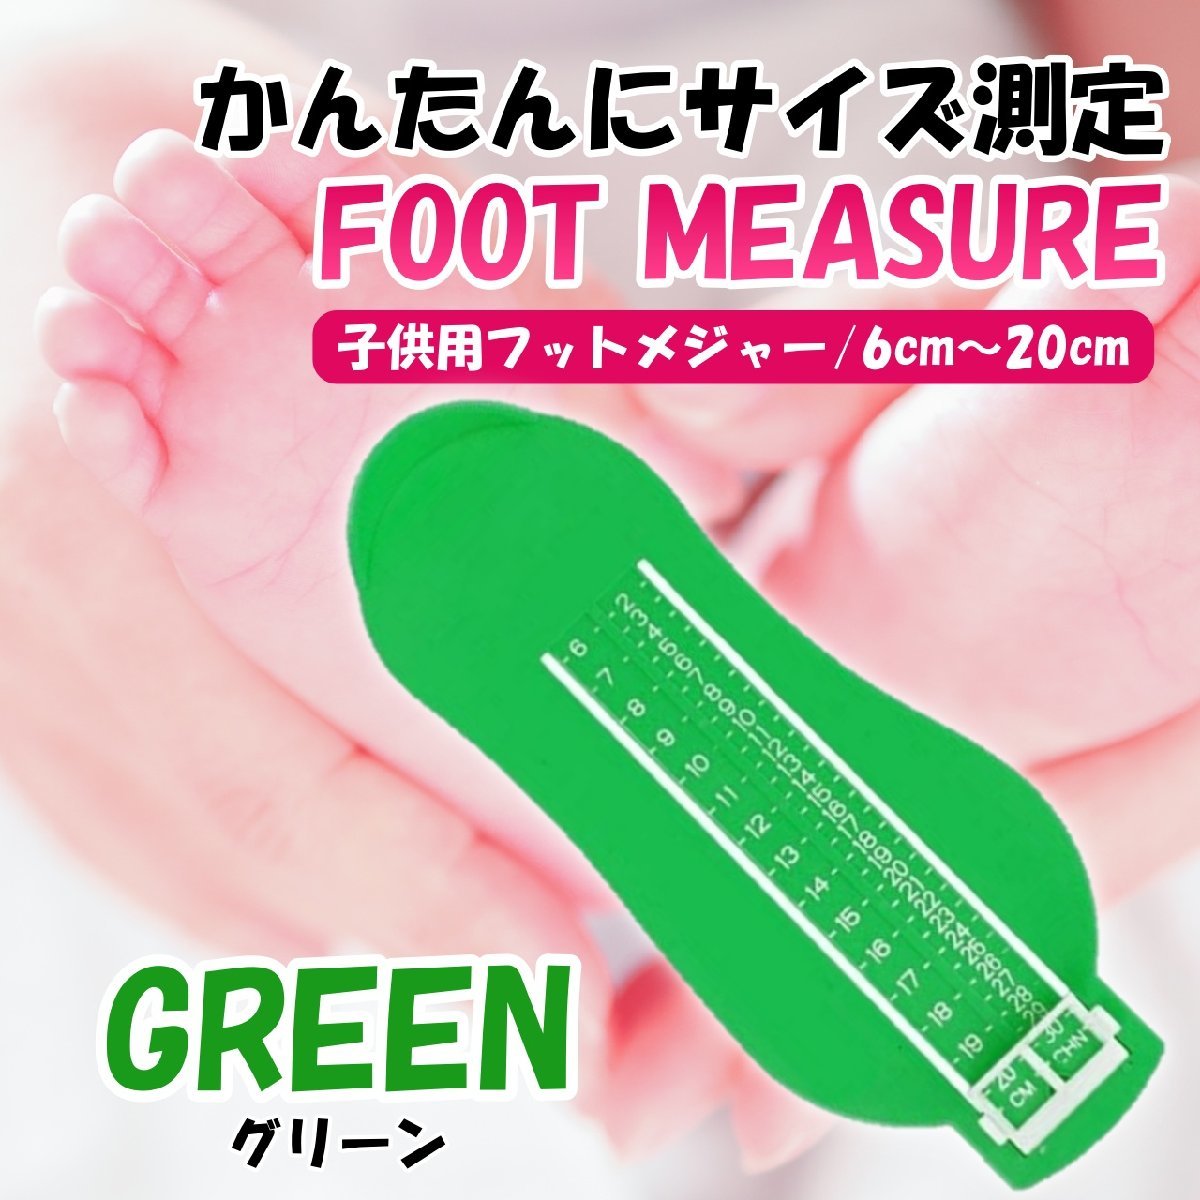 品揃え豊富で フットメジャー グリーン 靴 フットスケール ベビー キッズ 足 サイズ 測定